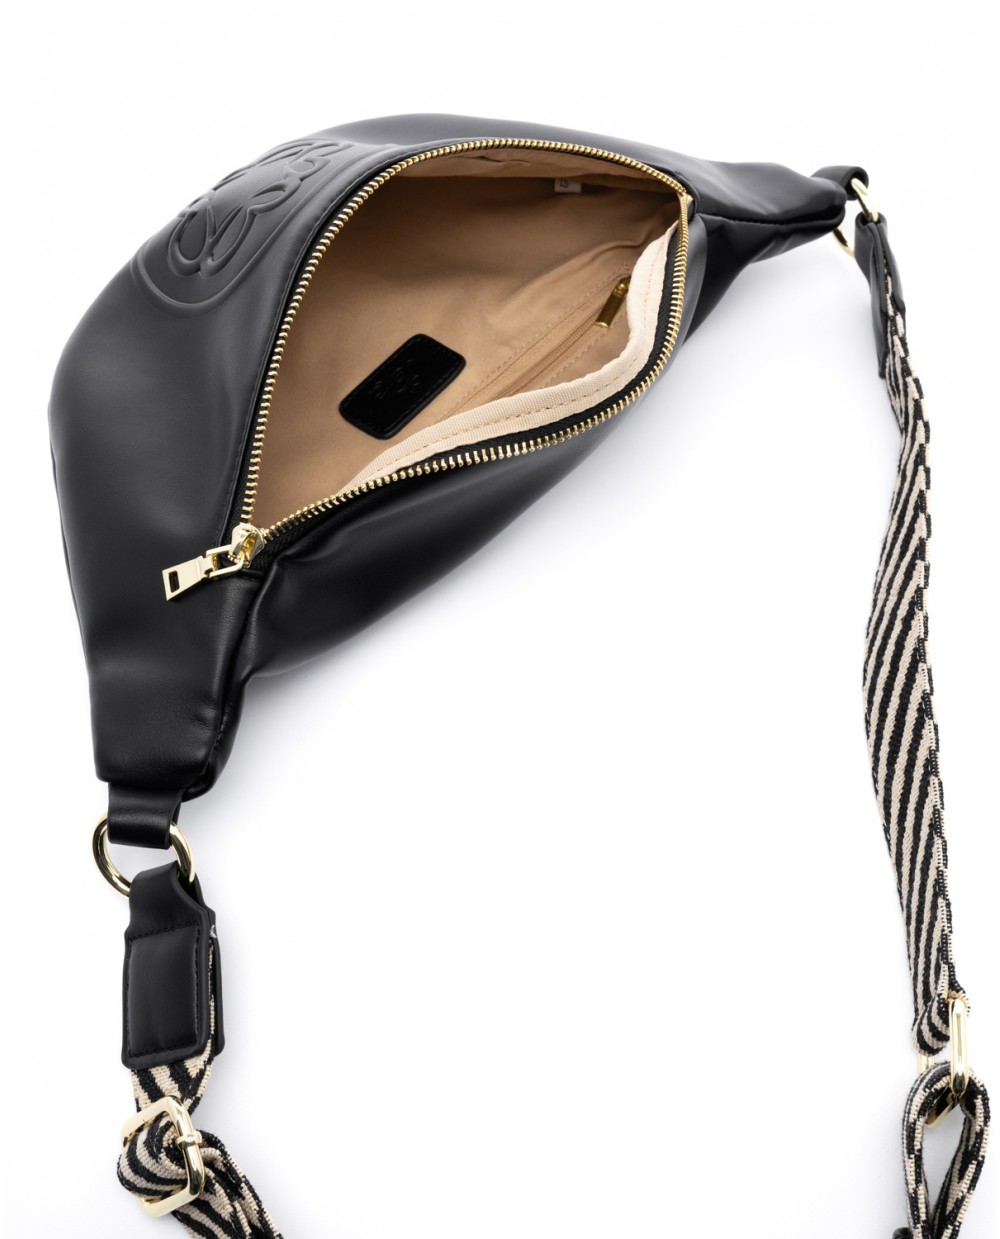 Τσάντα μέσης σε μαύρο χρώμα 6105-1